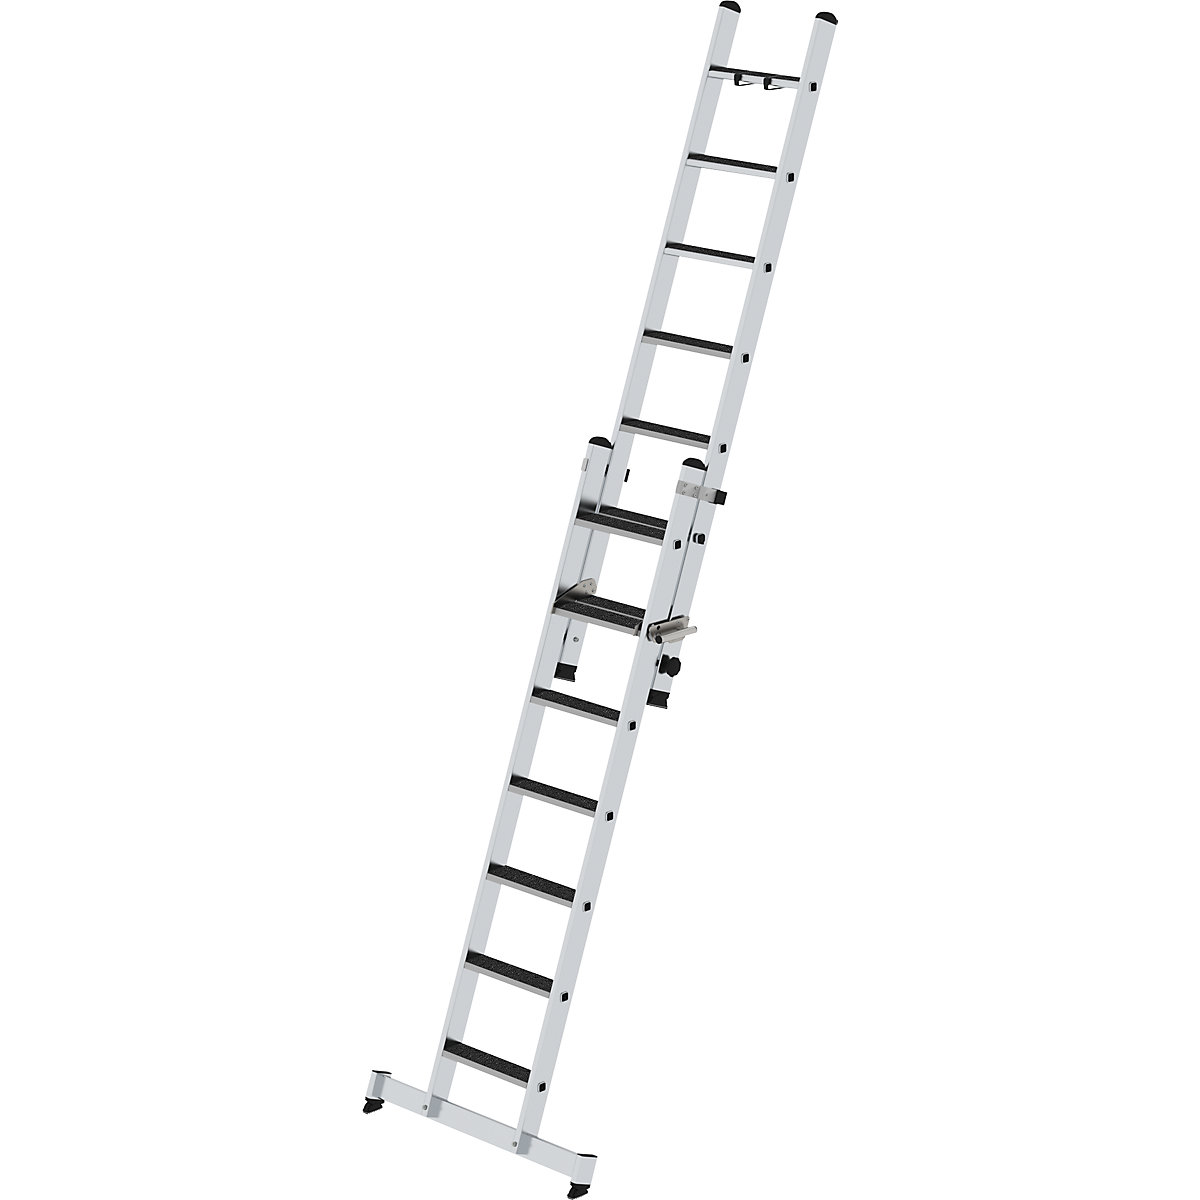 Extending step ladder, 2-part - MUNK